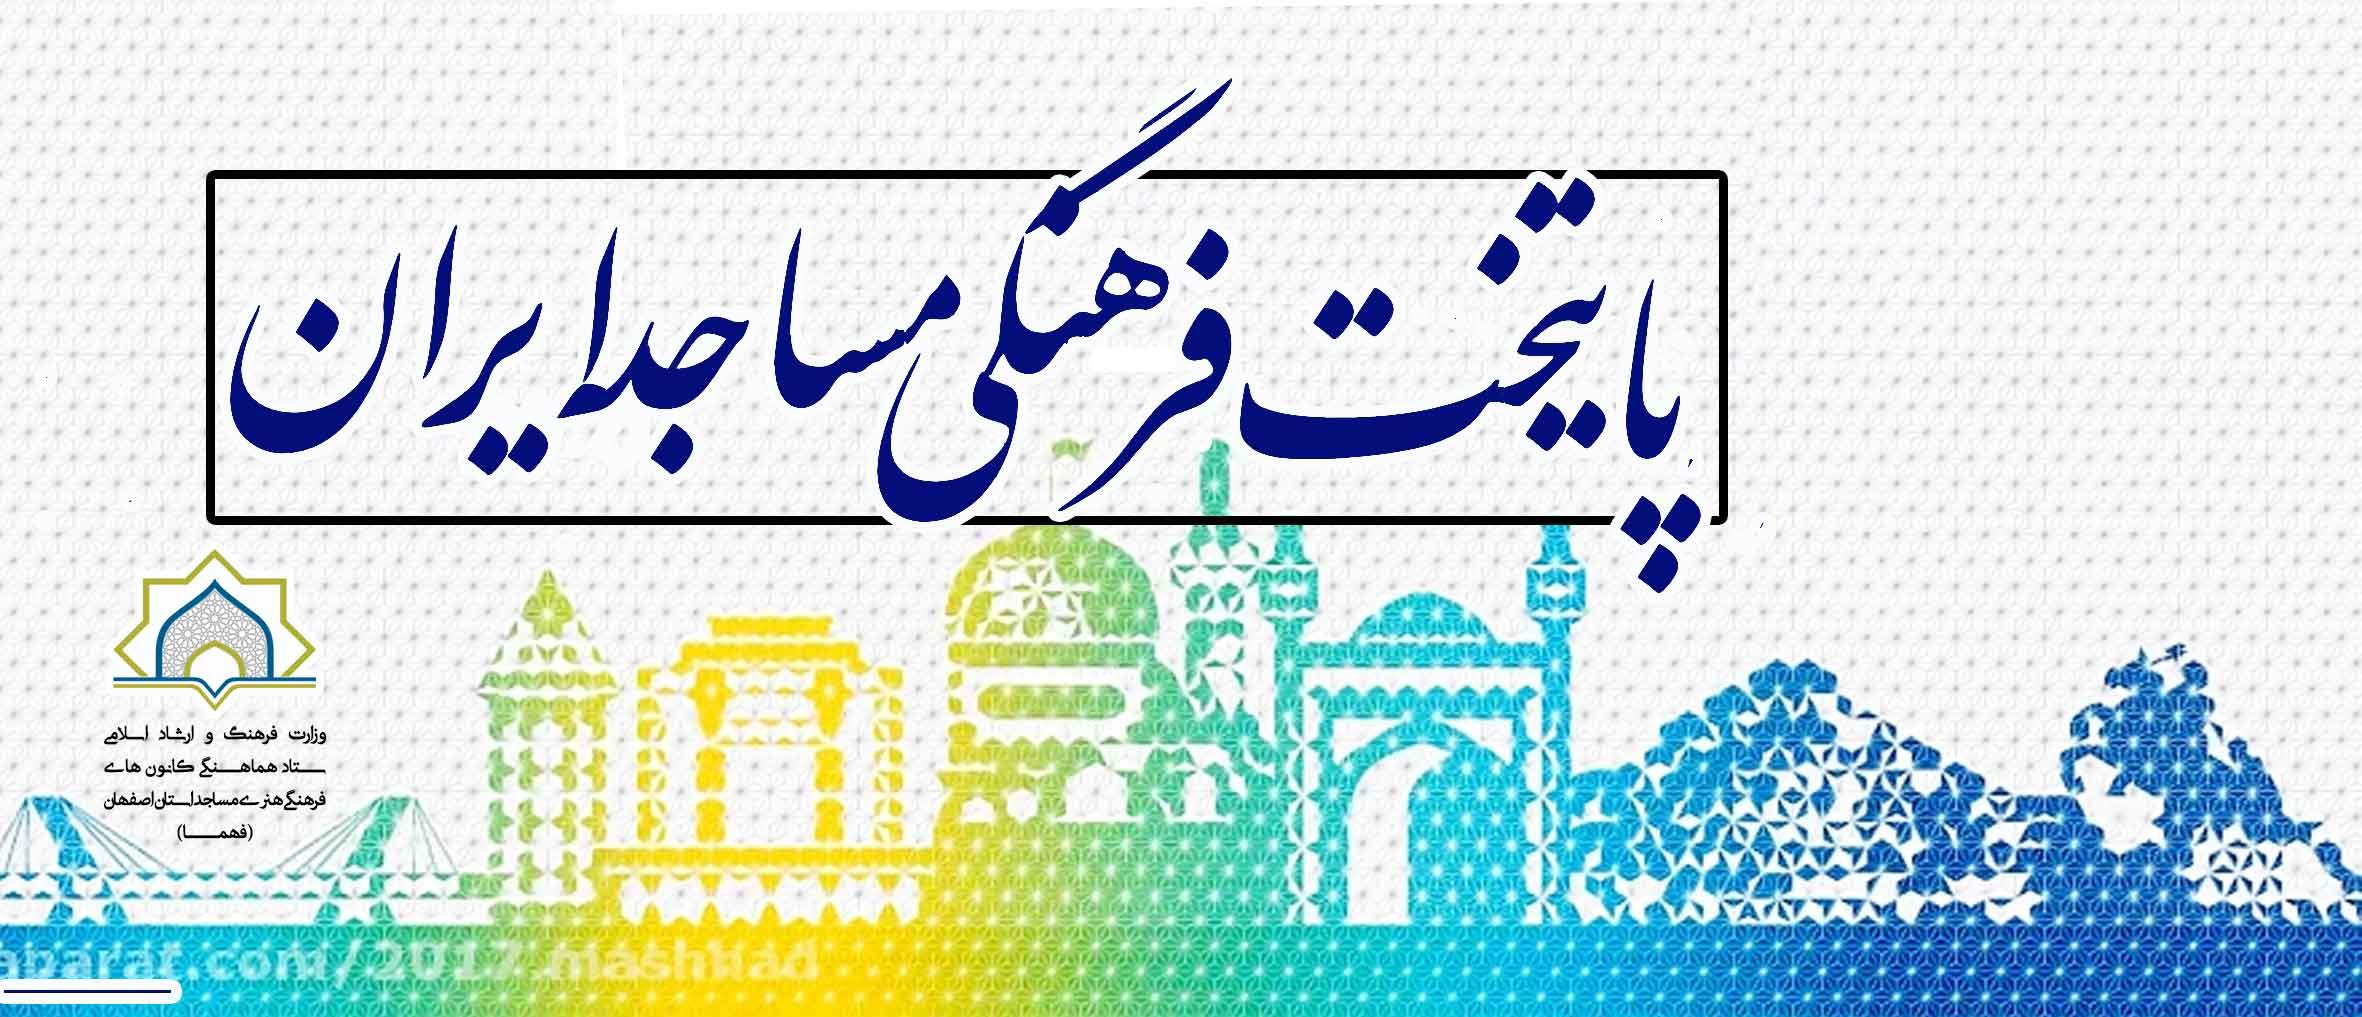 پایتخت فرهنگی و هنر مساجد ایران(فهما)